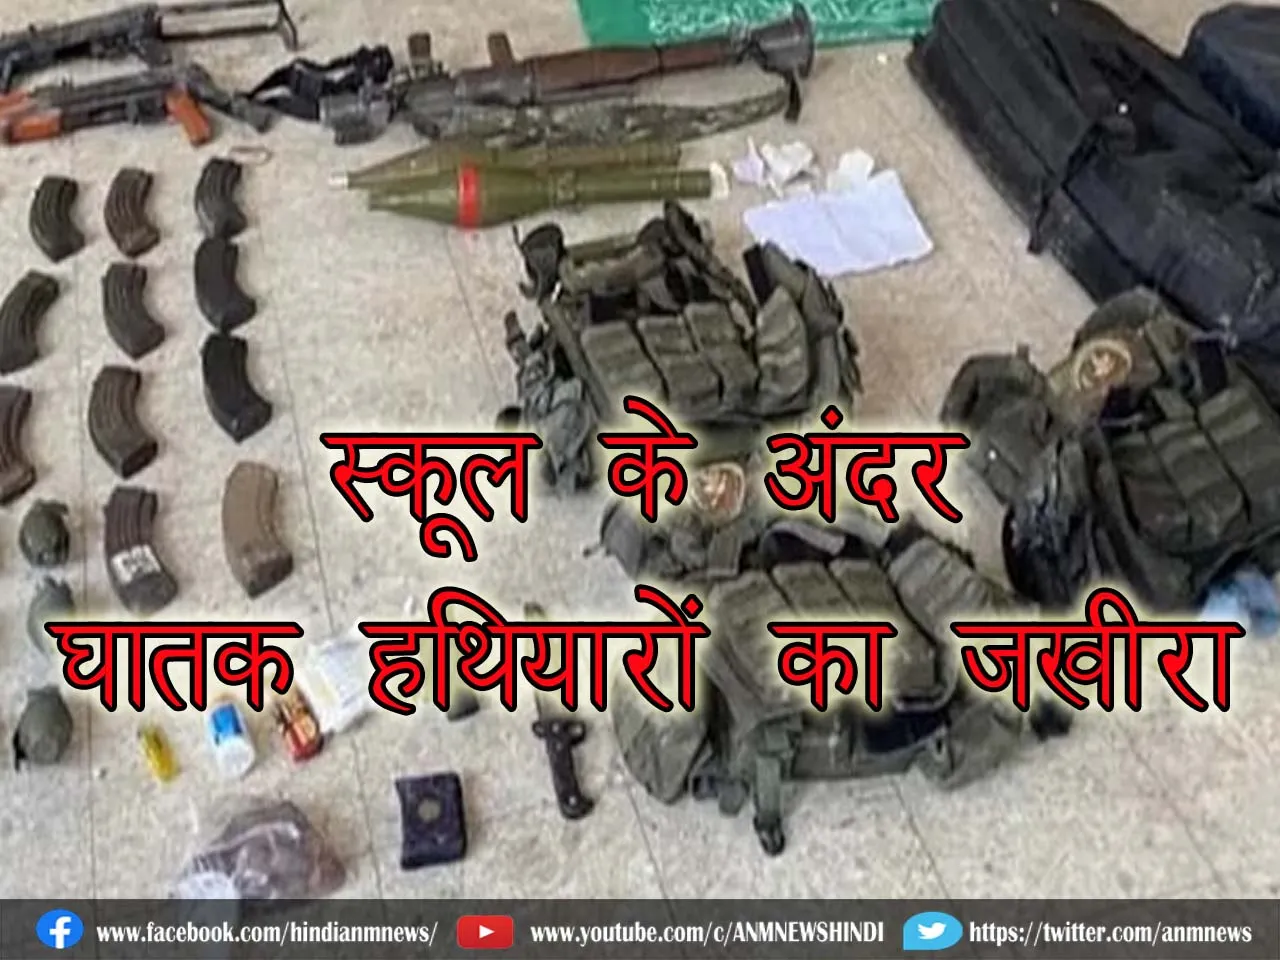 स्कूल के अंदर घातक हथियारों का जखीरा, सेना ने किया पर्दाफाश (Video)